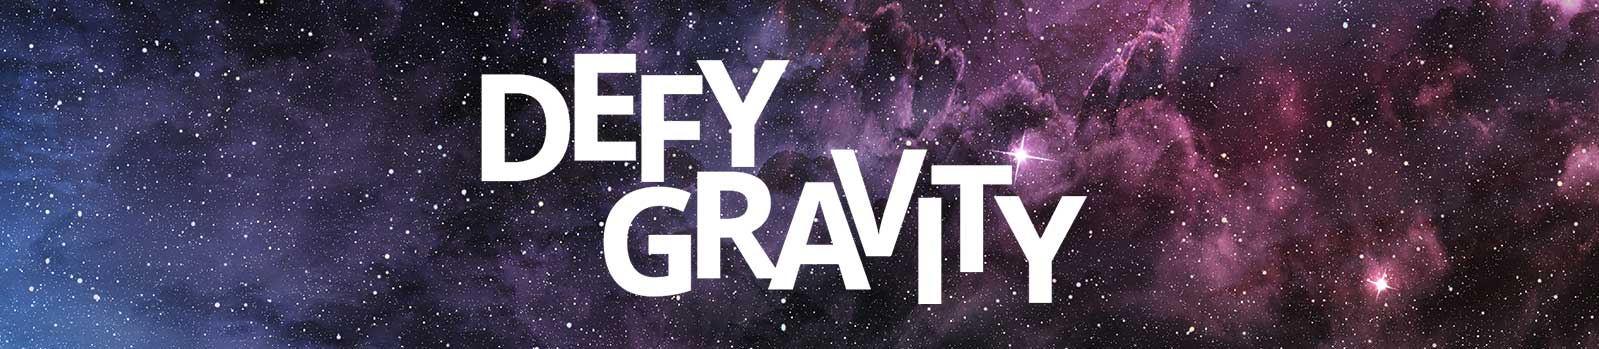 Defy gravity